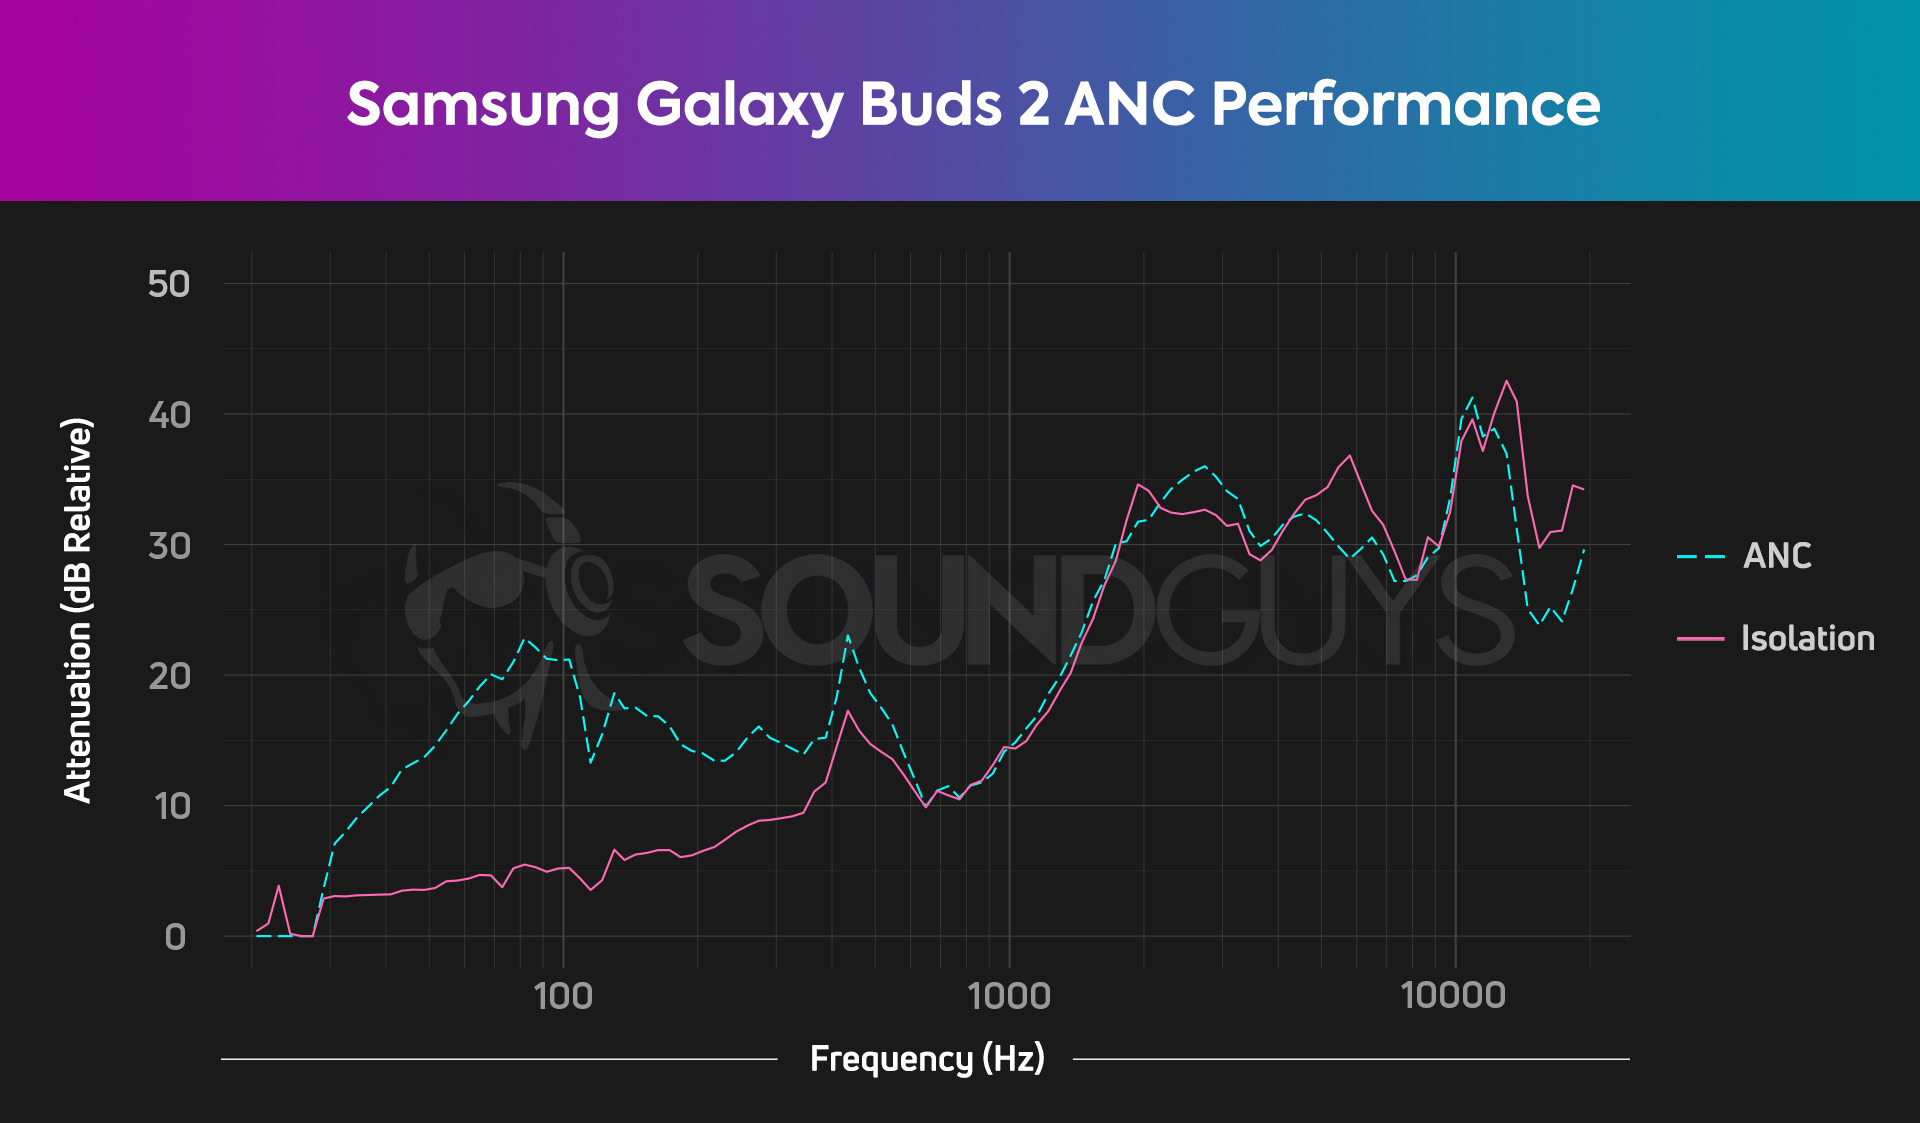 Un graphique illustre les performances d'isolation et de suppression du bruit des Samsung Galaxy Buds 2, avec des sons basse fréquence rendus un quart aussi forts avec l'ANC activé que sans les écouteurs du tout.